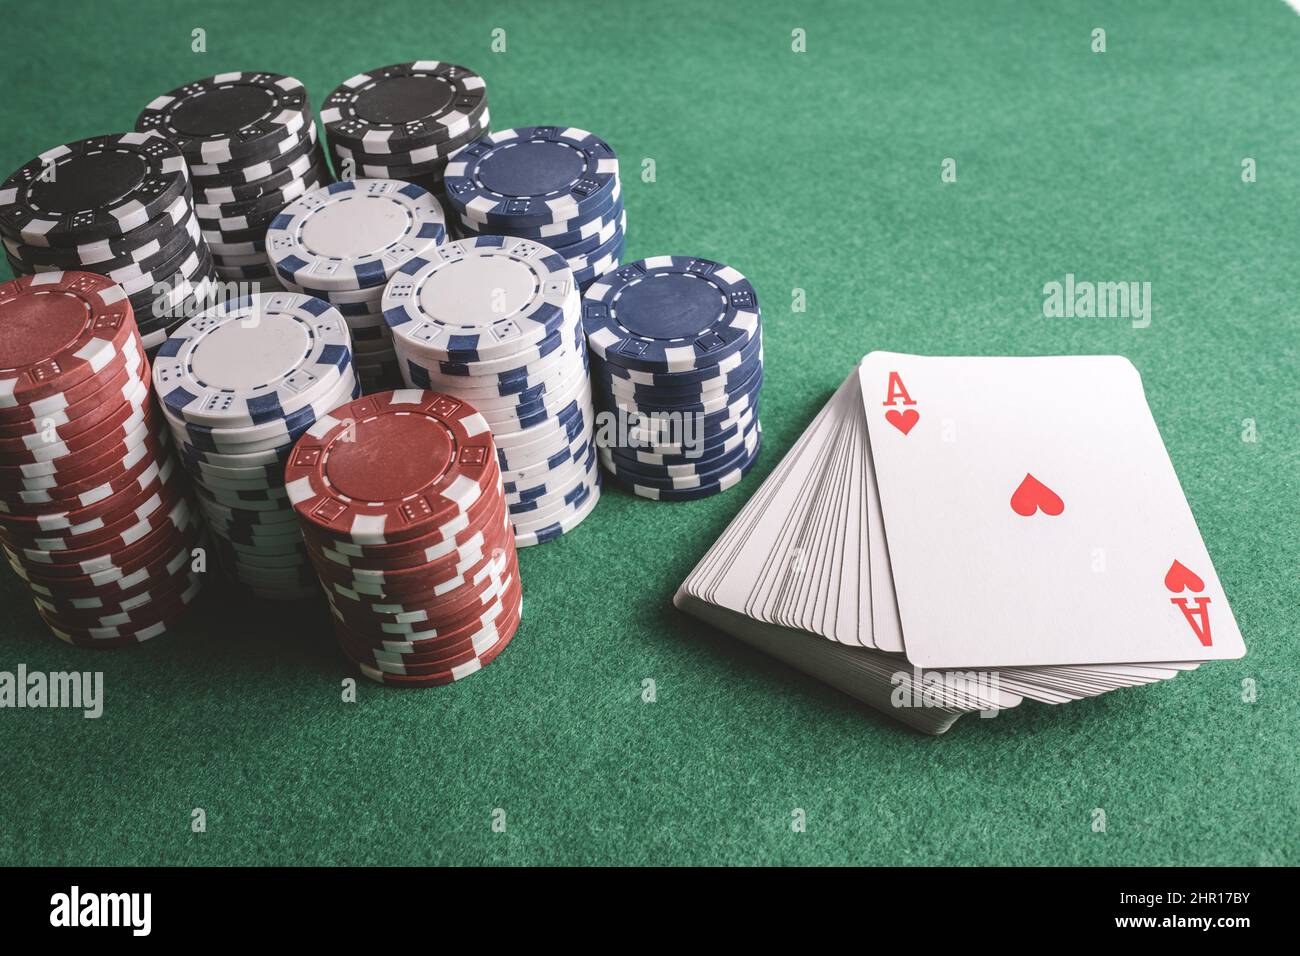 Pokerkarten, Chips, Würfel auf dem Spieltisch. Casino-Konzept Stockfoto